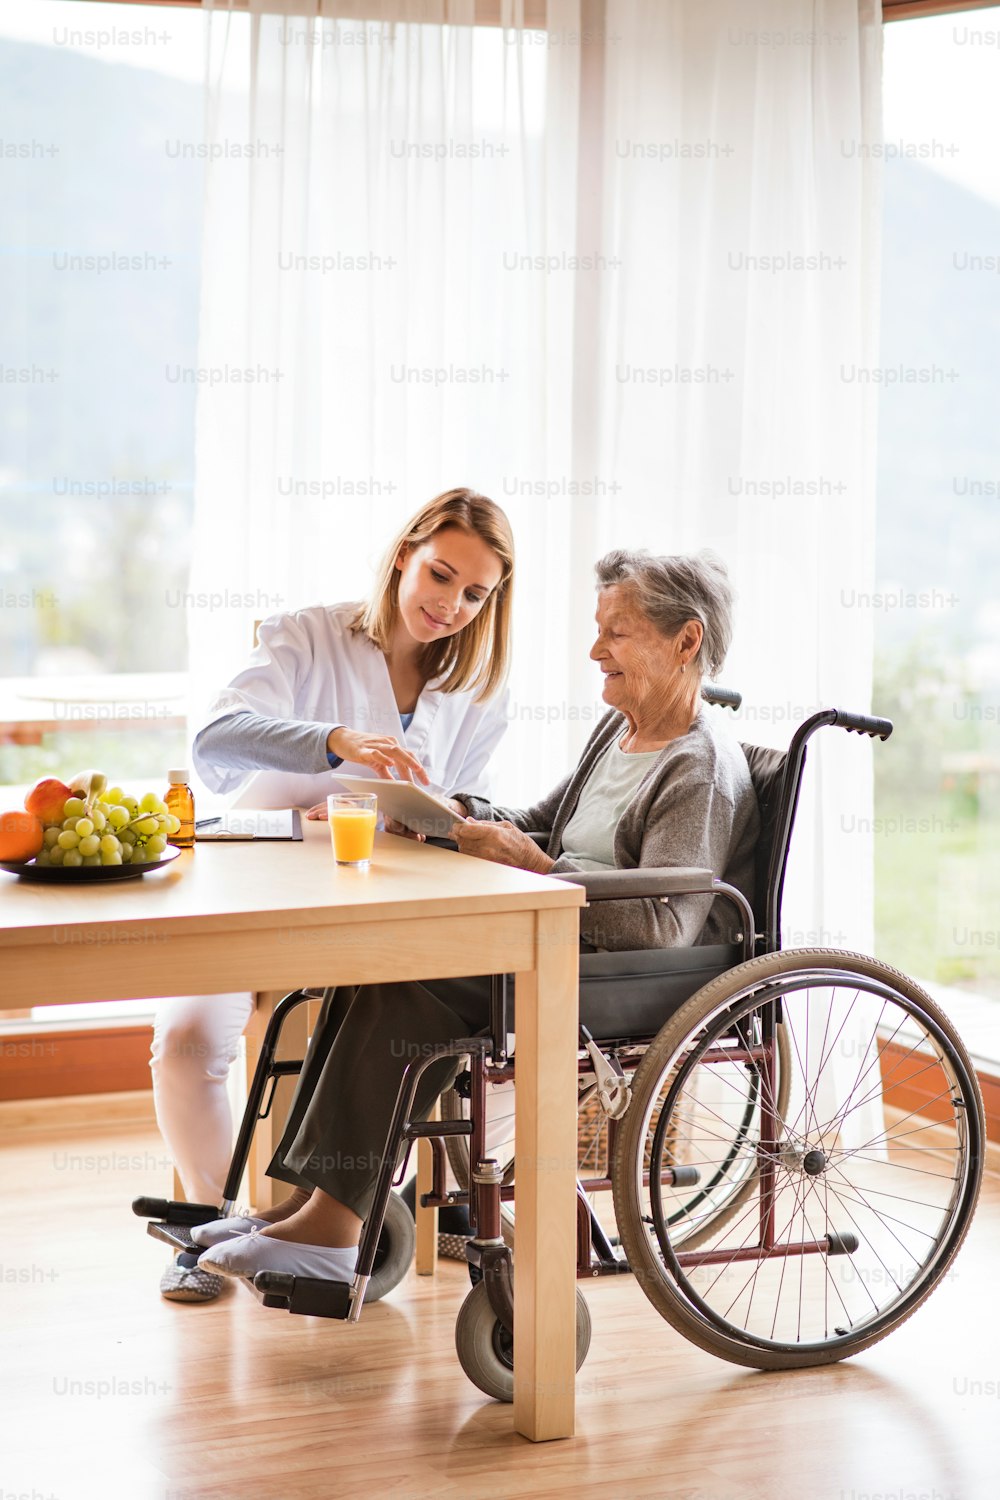 Visitador de salud y una mujer mayor con tableta durante la visita domiciliaria. Una enfermera hablando con una anciana.